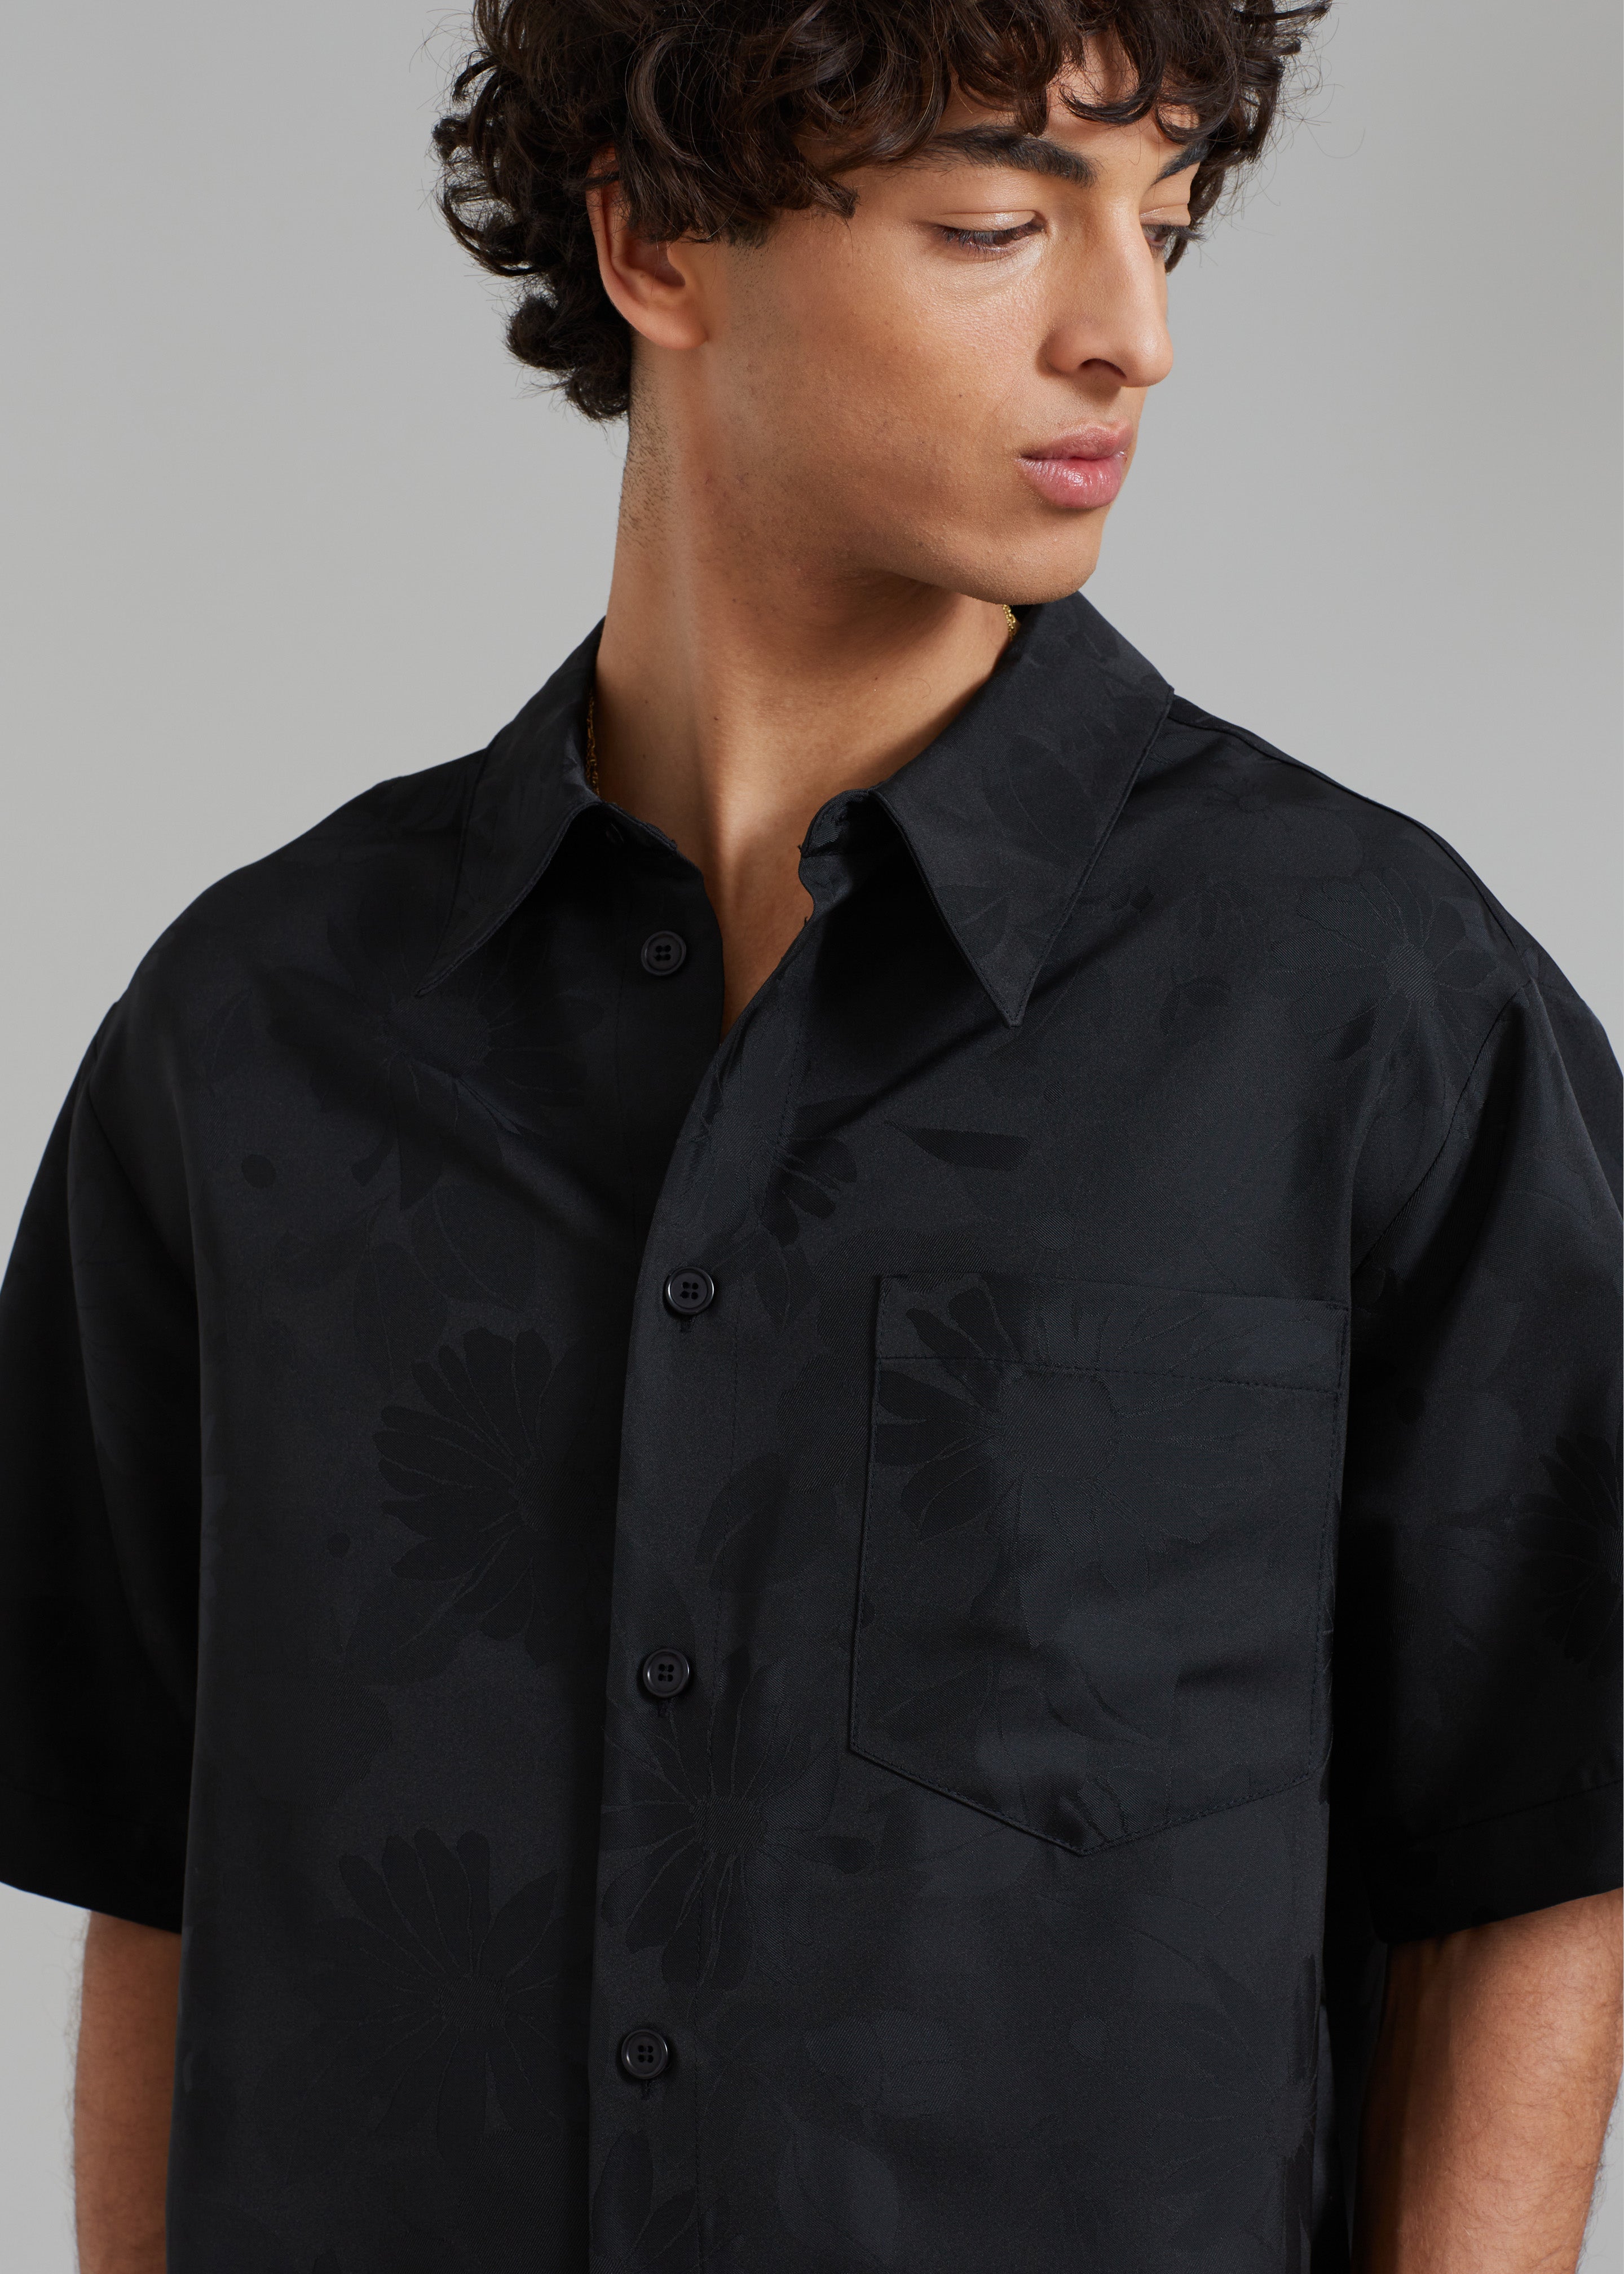 Róhe Floral Jacquard Shirt - Black Jacquard – The Frankie Shop